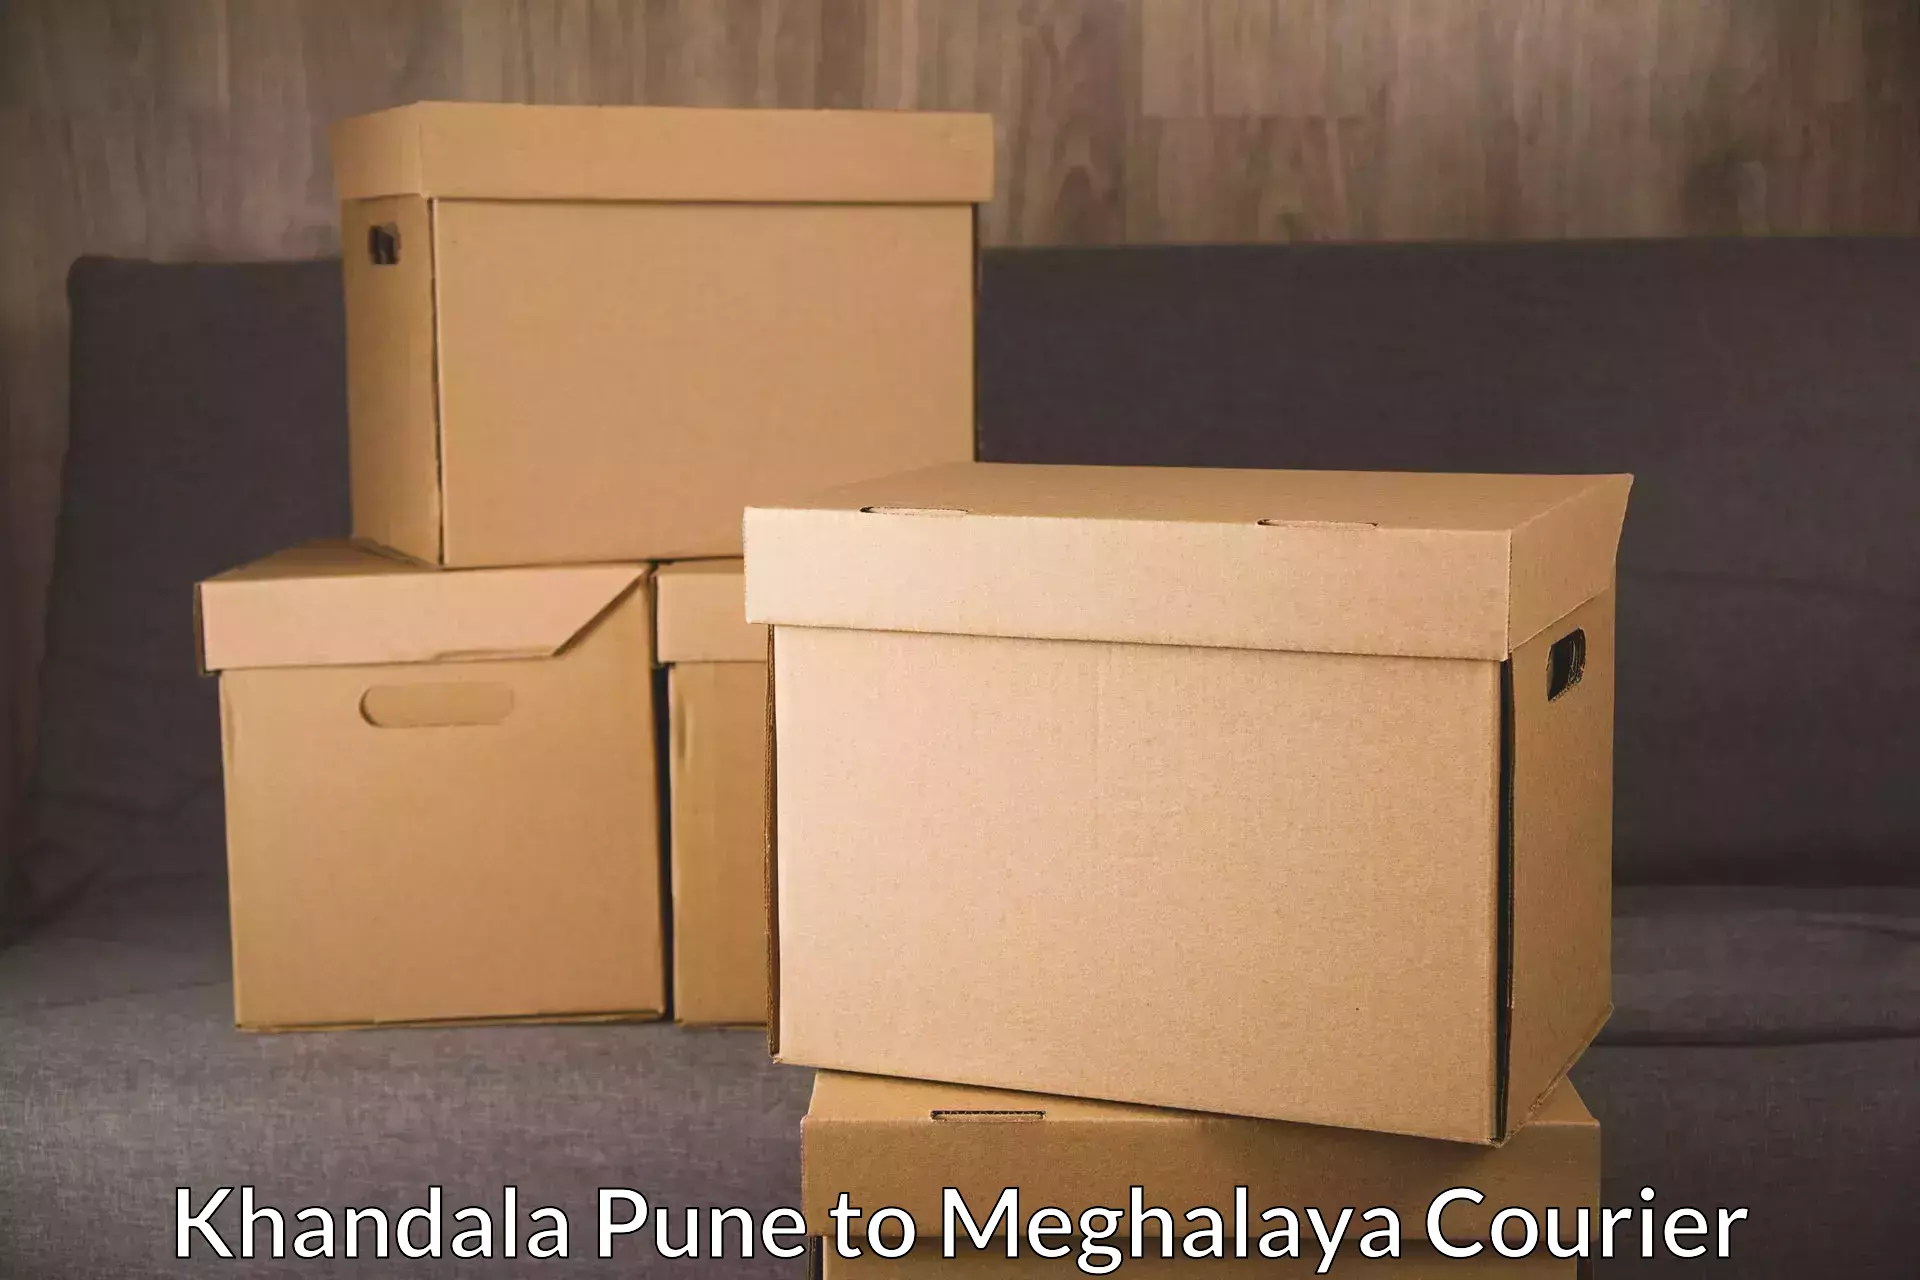 Urgent courier needs Khandala Pune to Meghalaya